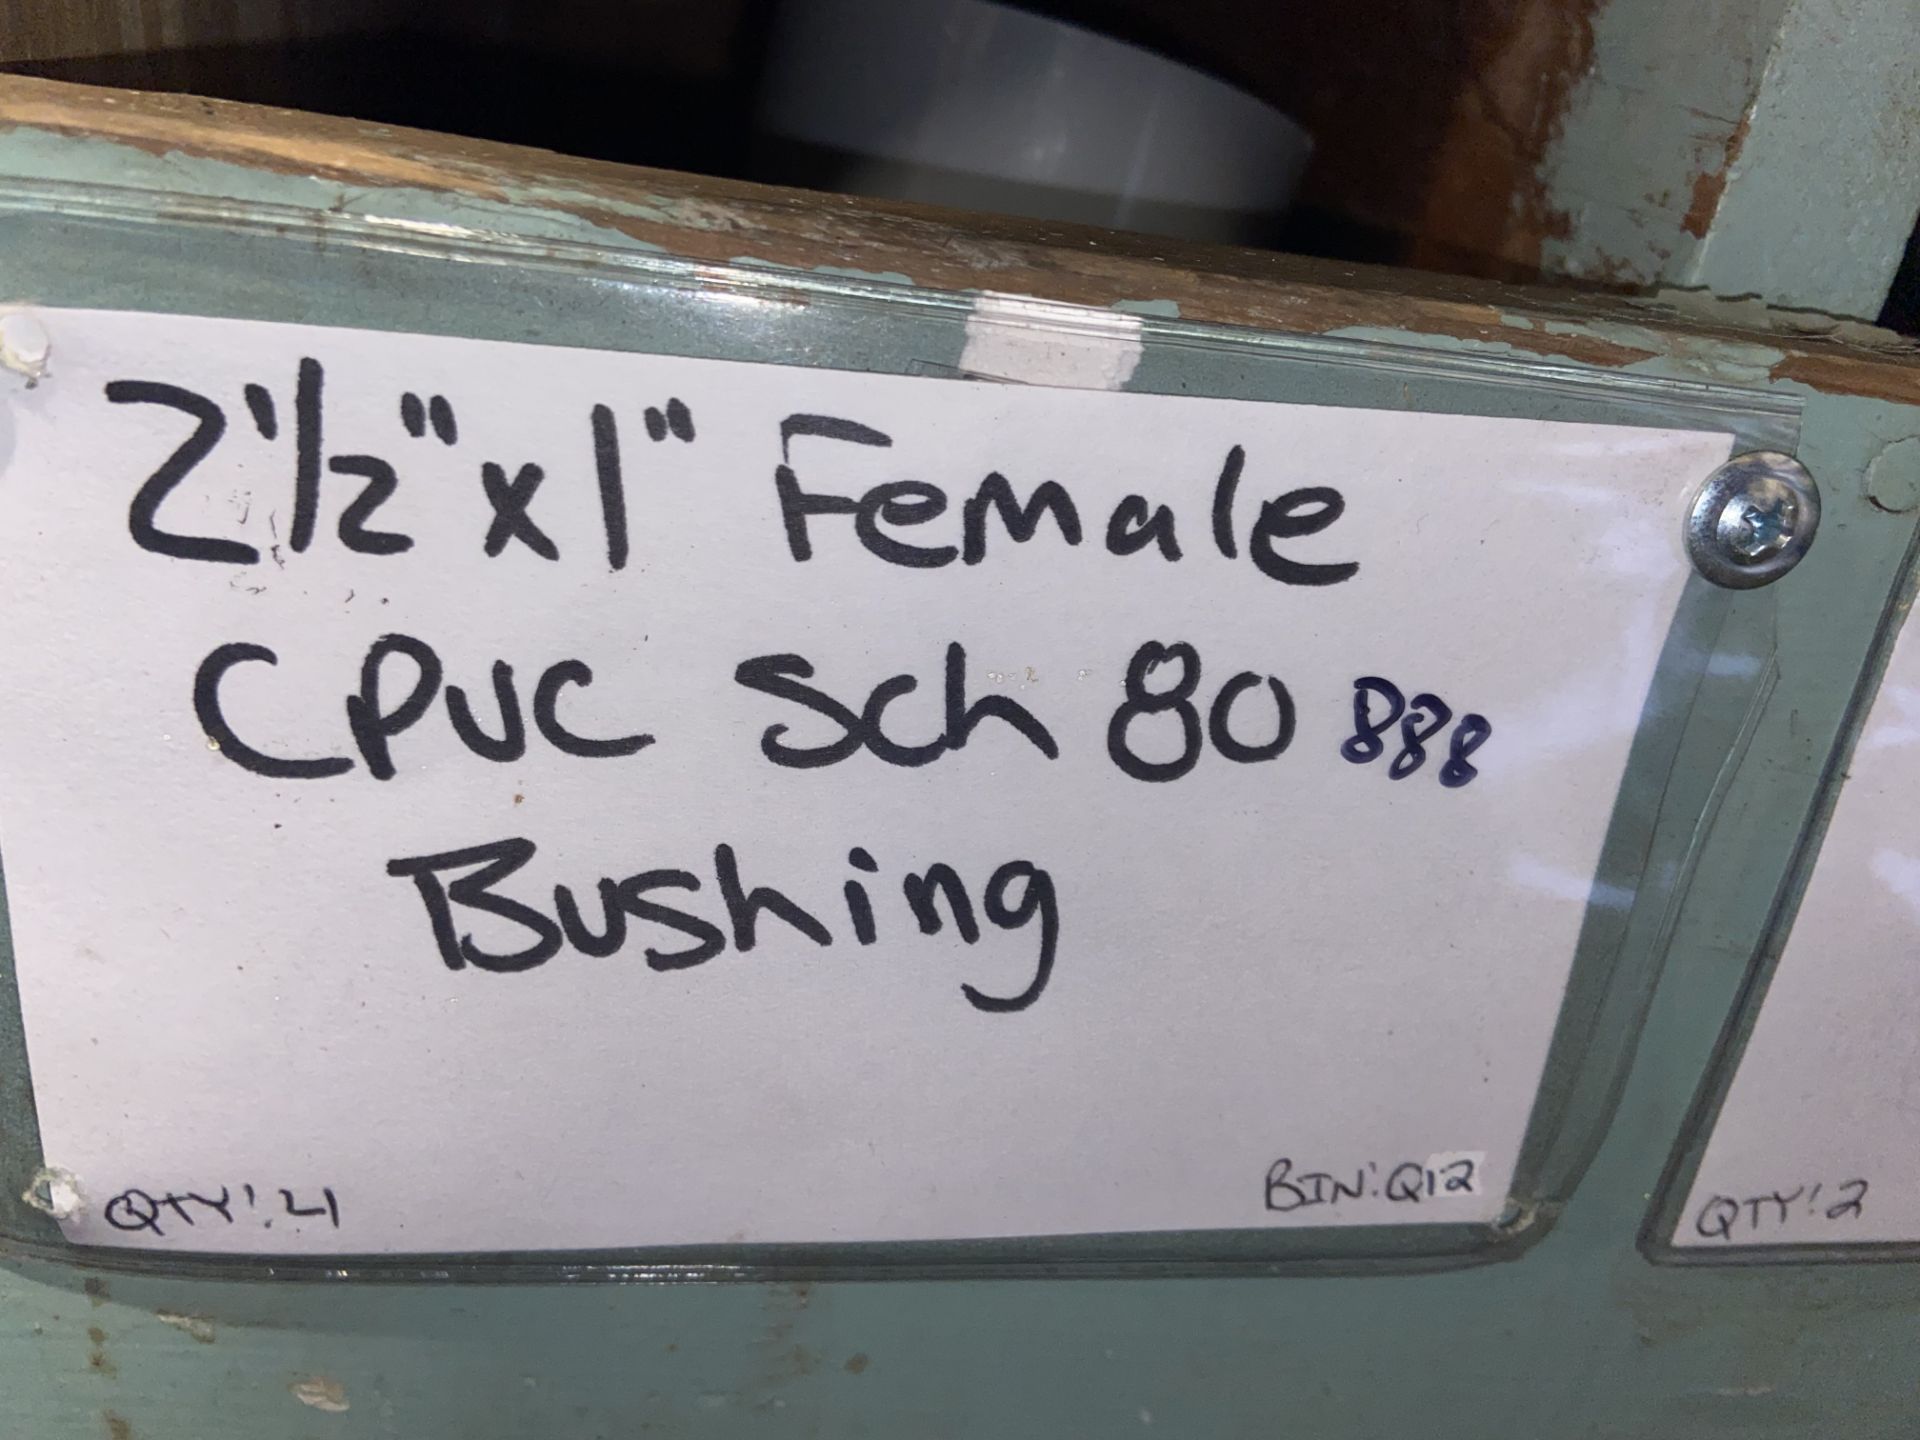 (9) 2 1/2”x 1” Female CPVC SCH 80 Bushing (2) 2 1/2”x 2” CPVC SCH 80 Bushing (BinQ12-Q18) (3) 3x” - Image 2 of 6